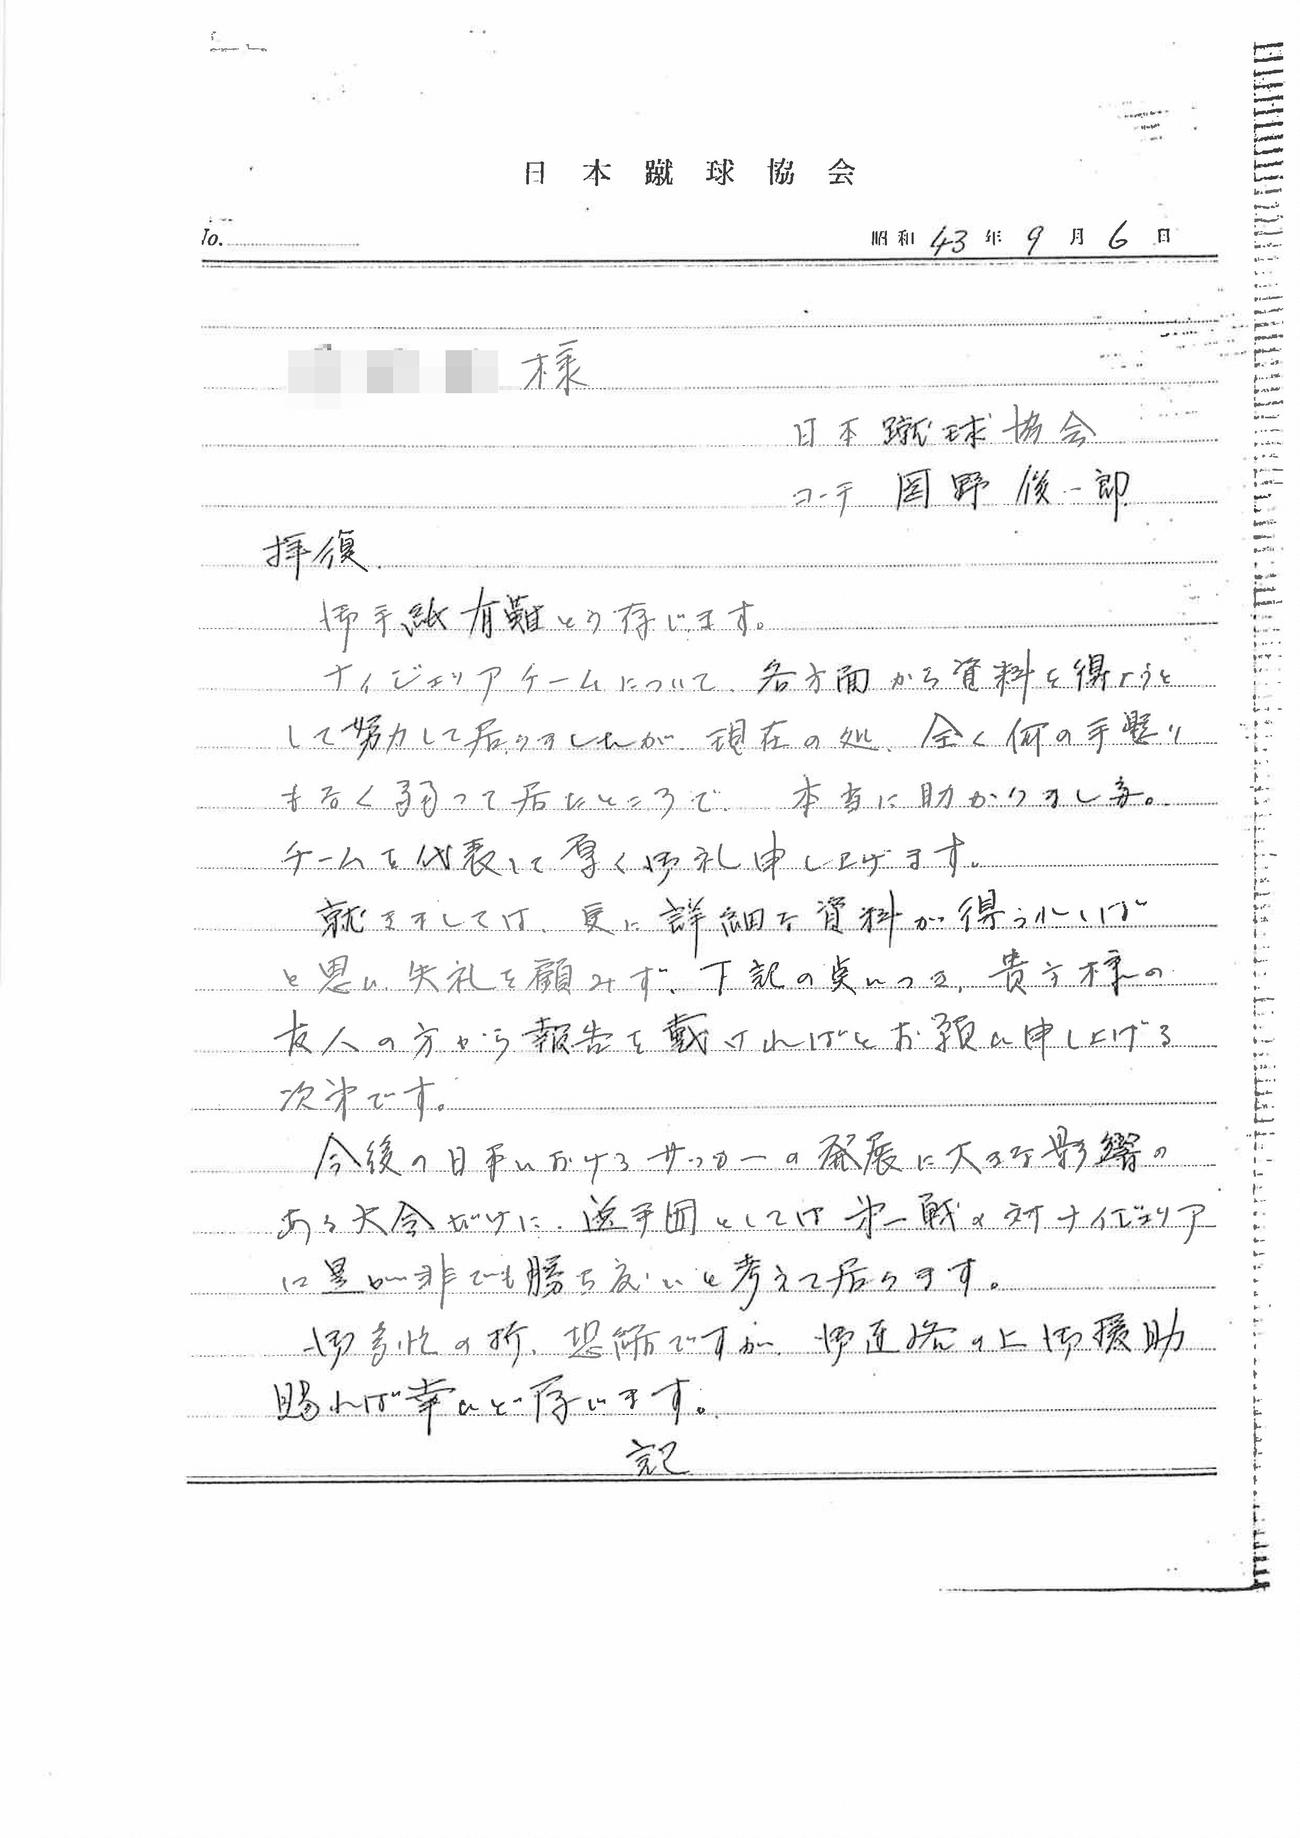 岡野俊一郎がナイジェリアの日本人駐在員に送った手紙